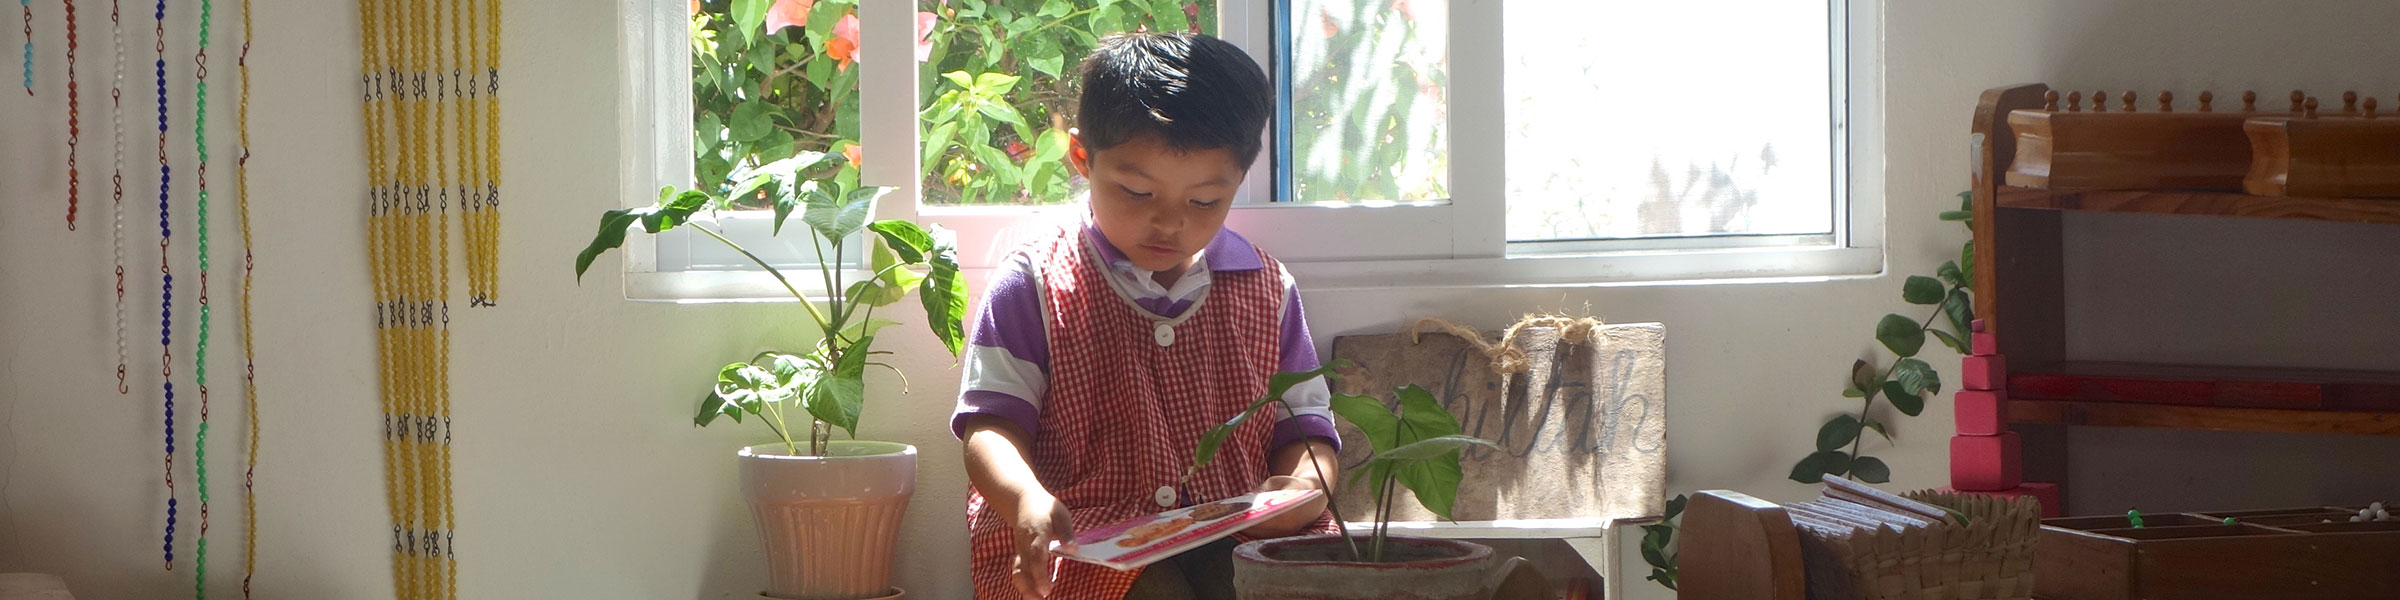 Child reading in a Montessori classroom